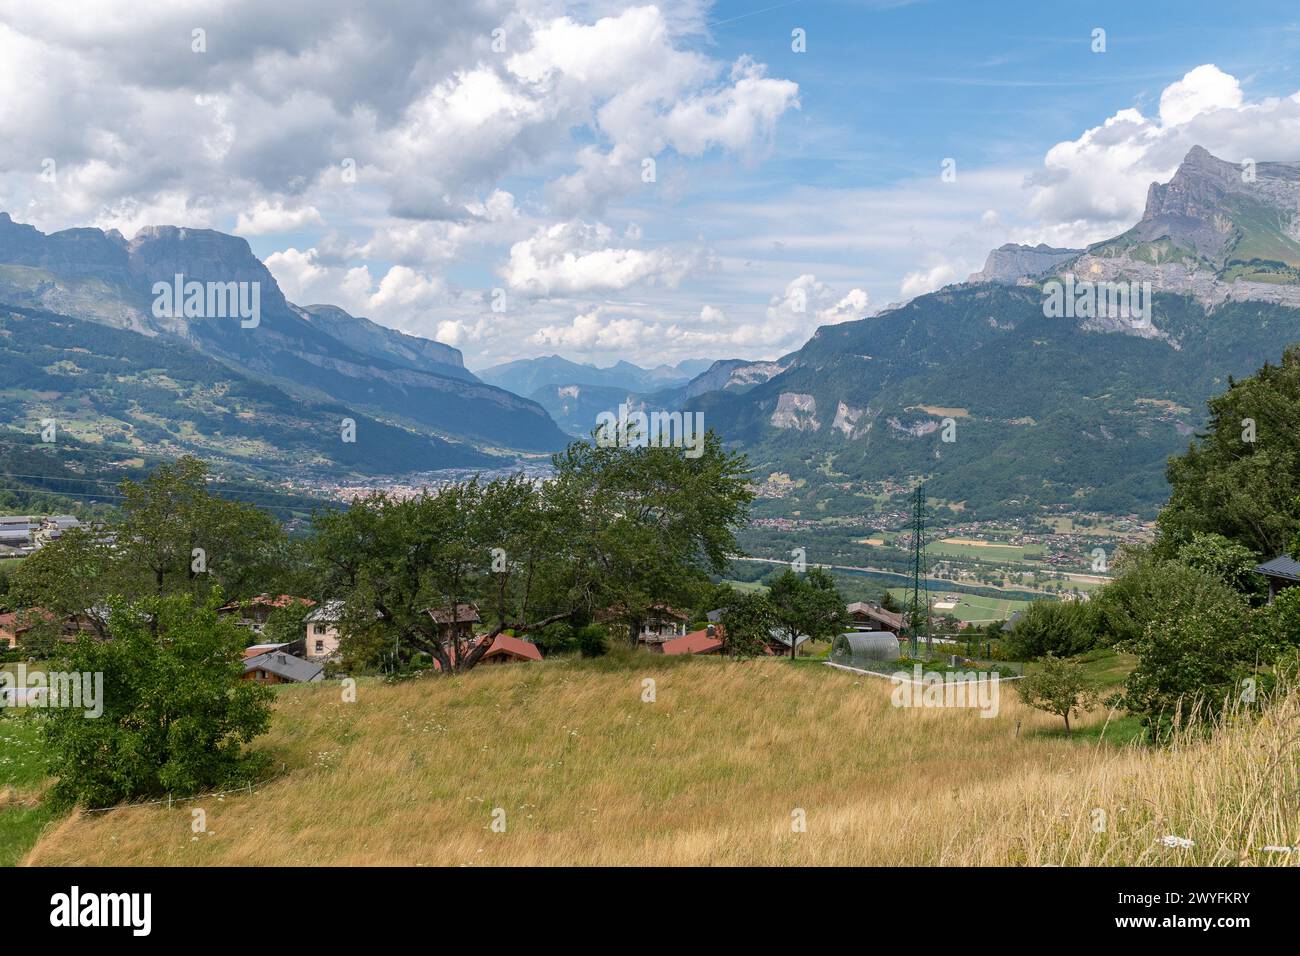 Vista elevata della valle dell'Arve nel dipartimento francese dell'alta Savoia, formato dal corso superiore del fiume Arve, Alvernia Rodano Alpes, Francia Foto Stock